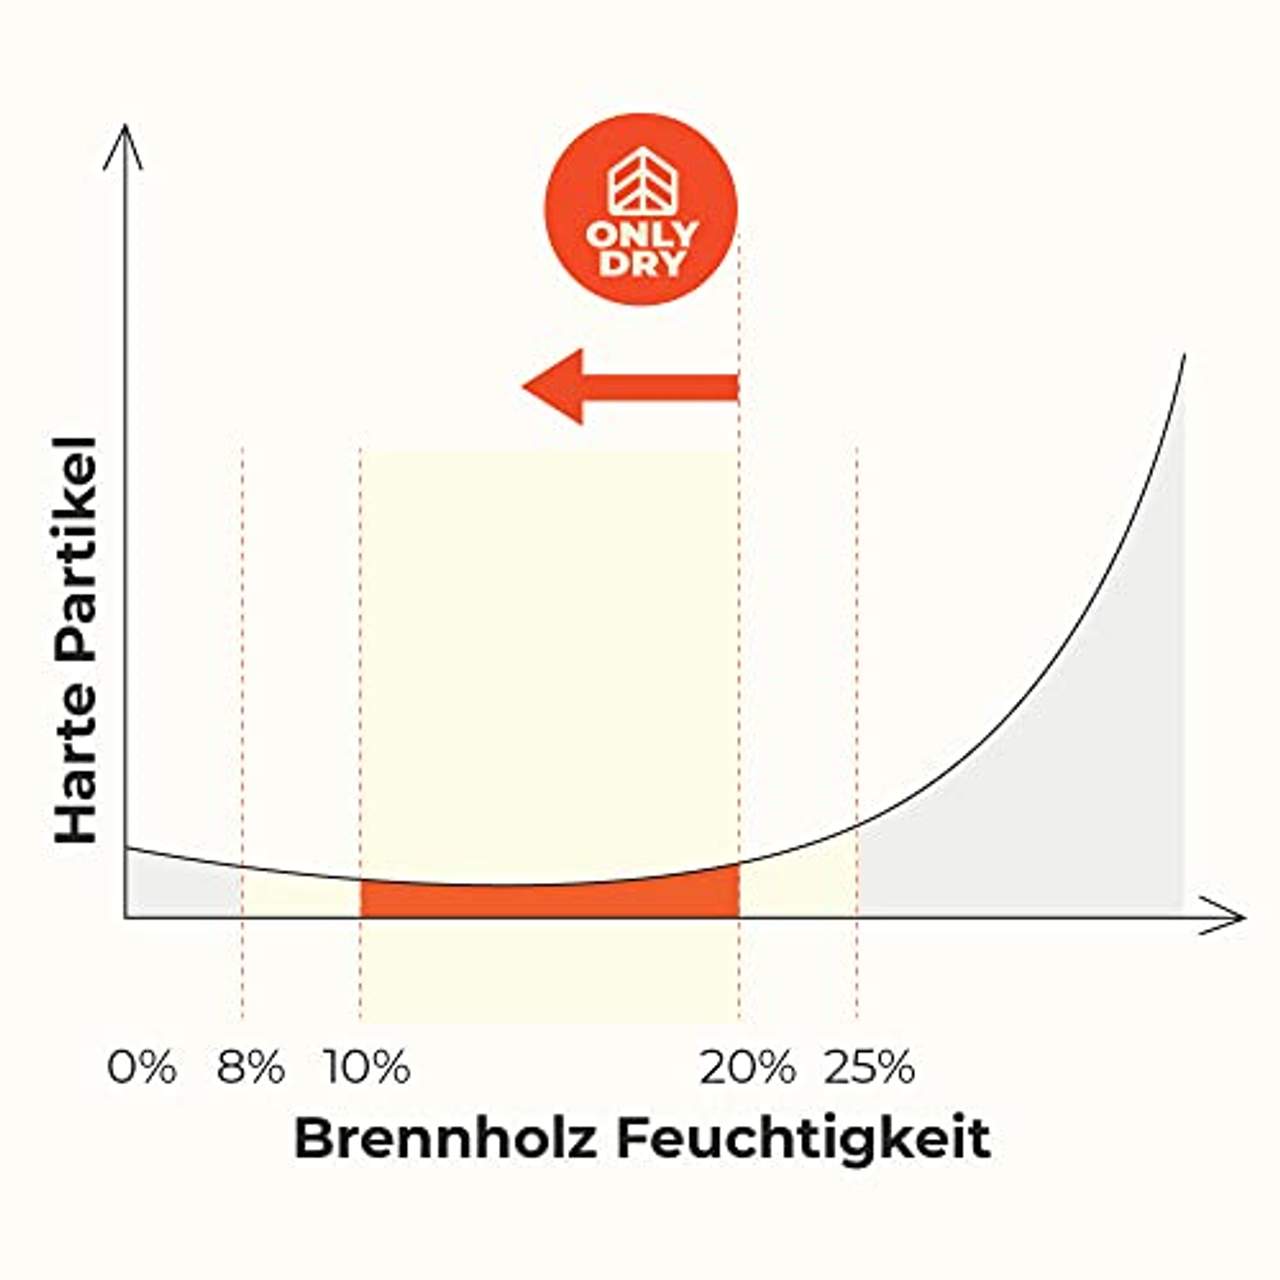 Onlydry Brennholz mit weniger als 18% Feuchtigkeit Palette